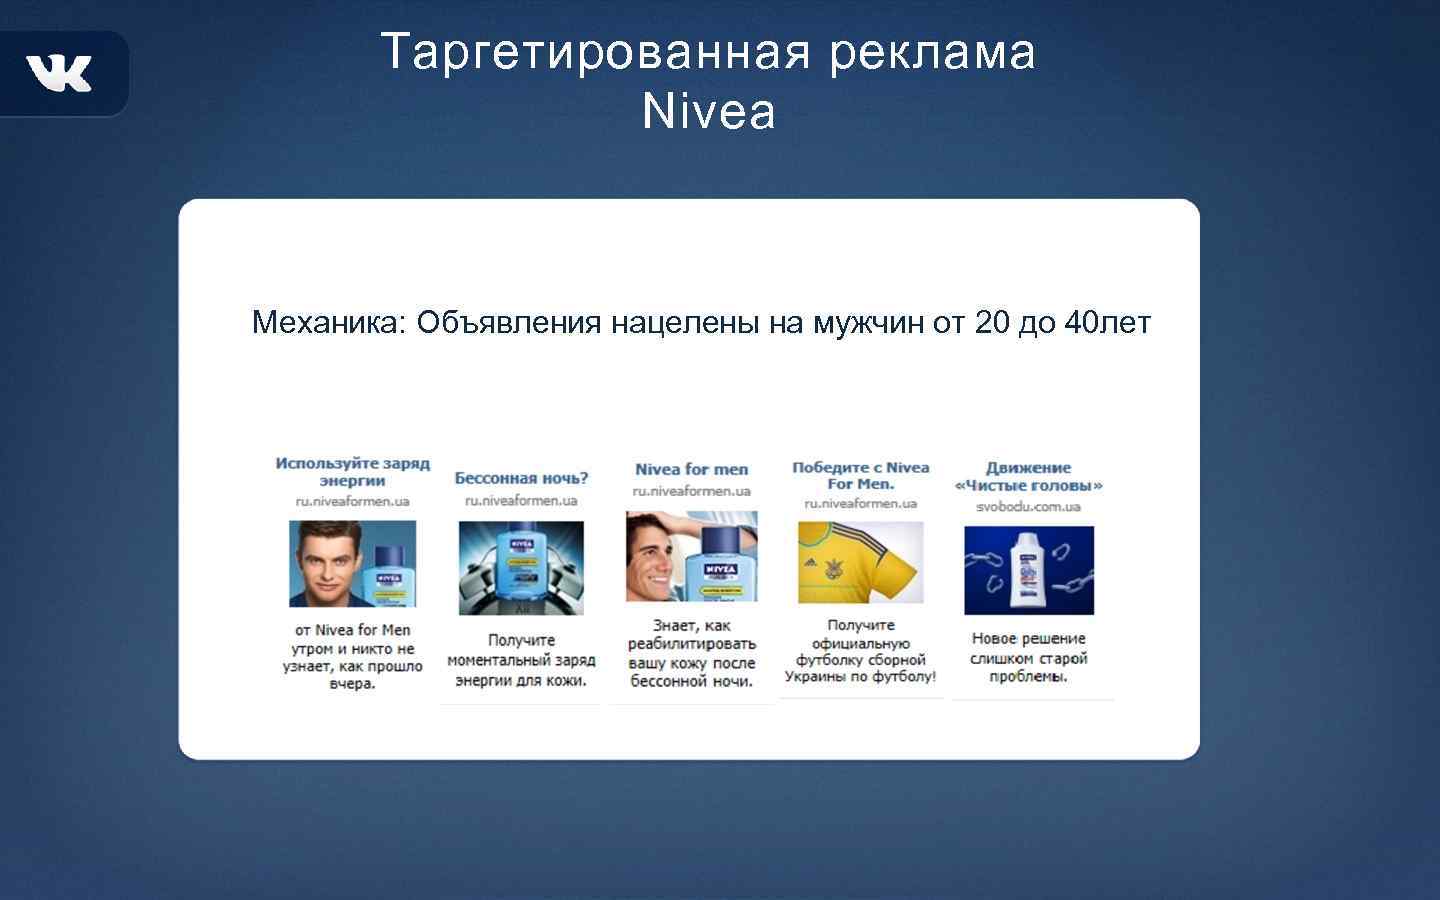 Таргетированная реклама Nivea Механика: Объявления нацелены на мужчин от 20 до 40 лет 